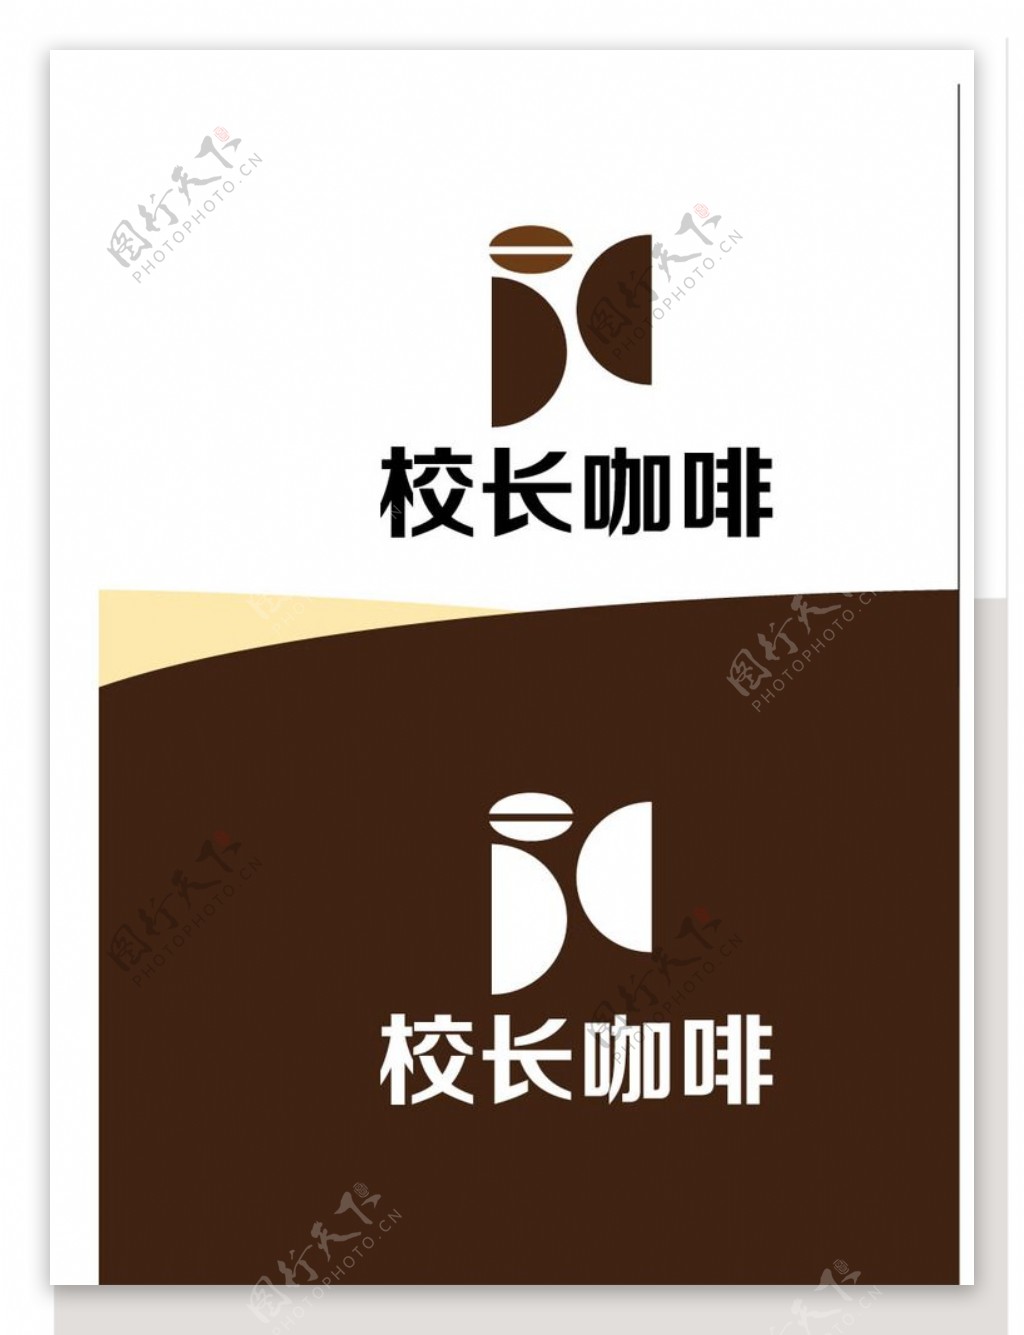 咖啡标识设计